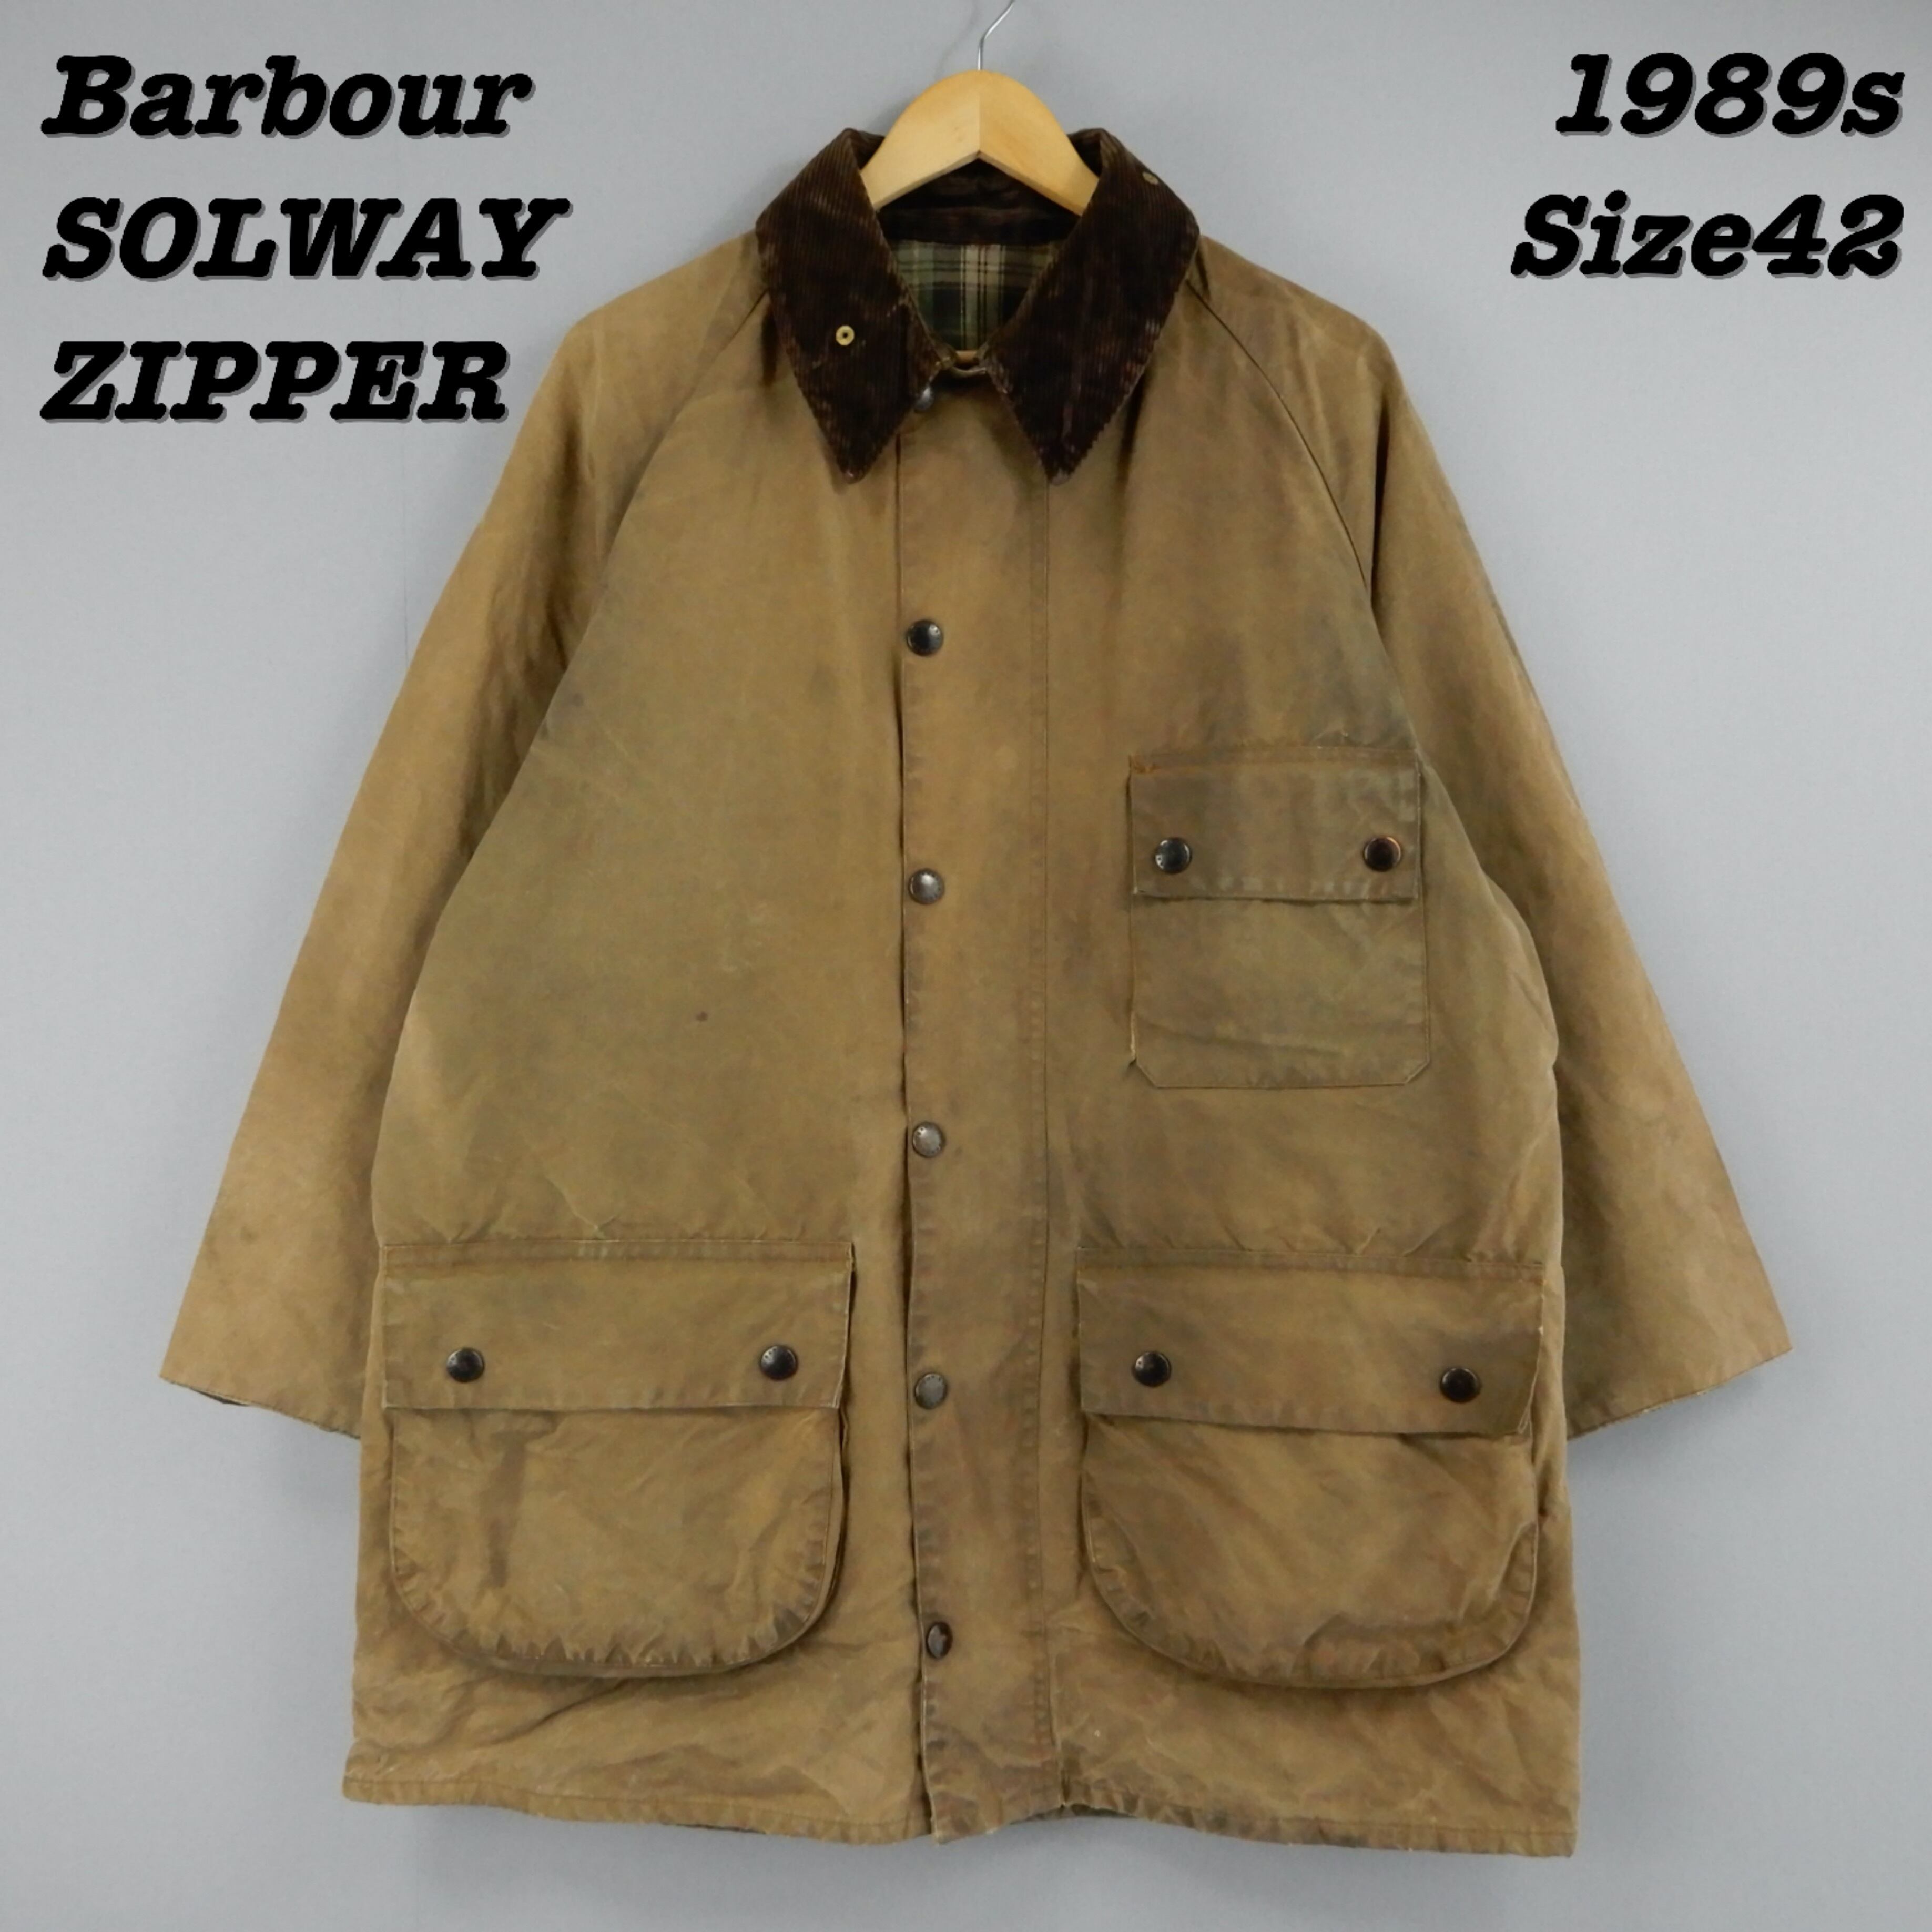 Barbour Solway Zipper Brown Size42 1989s